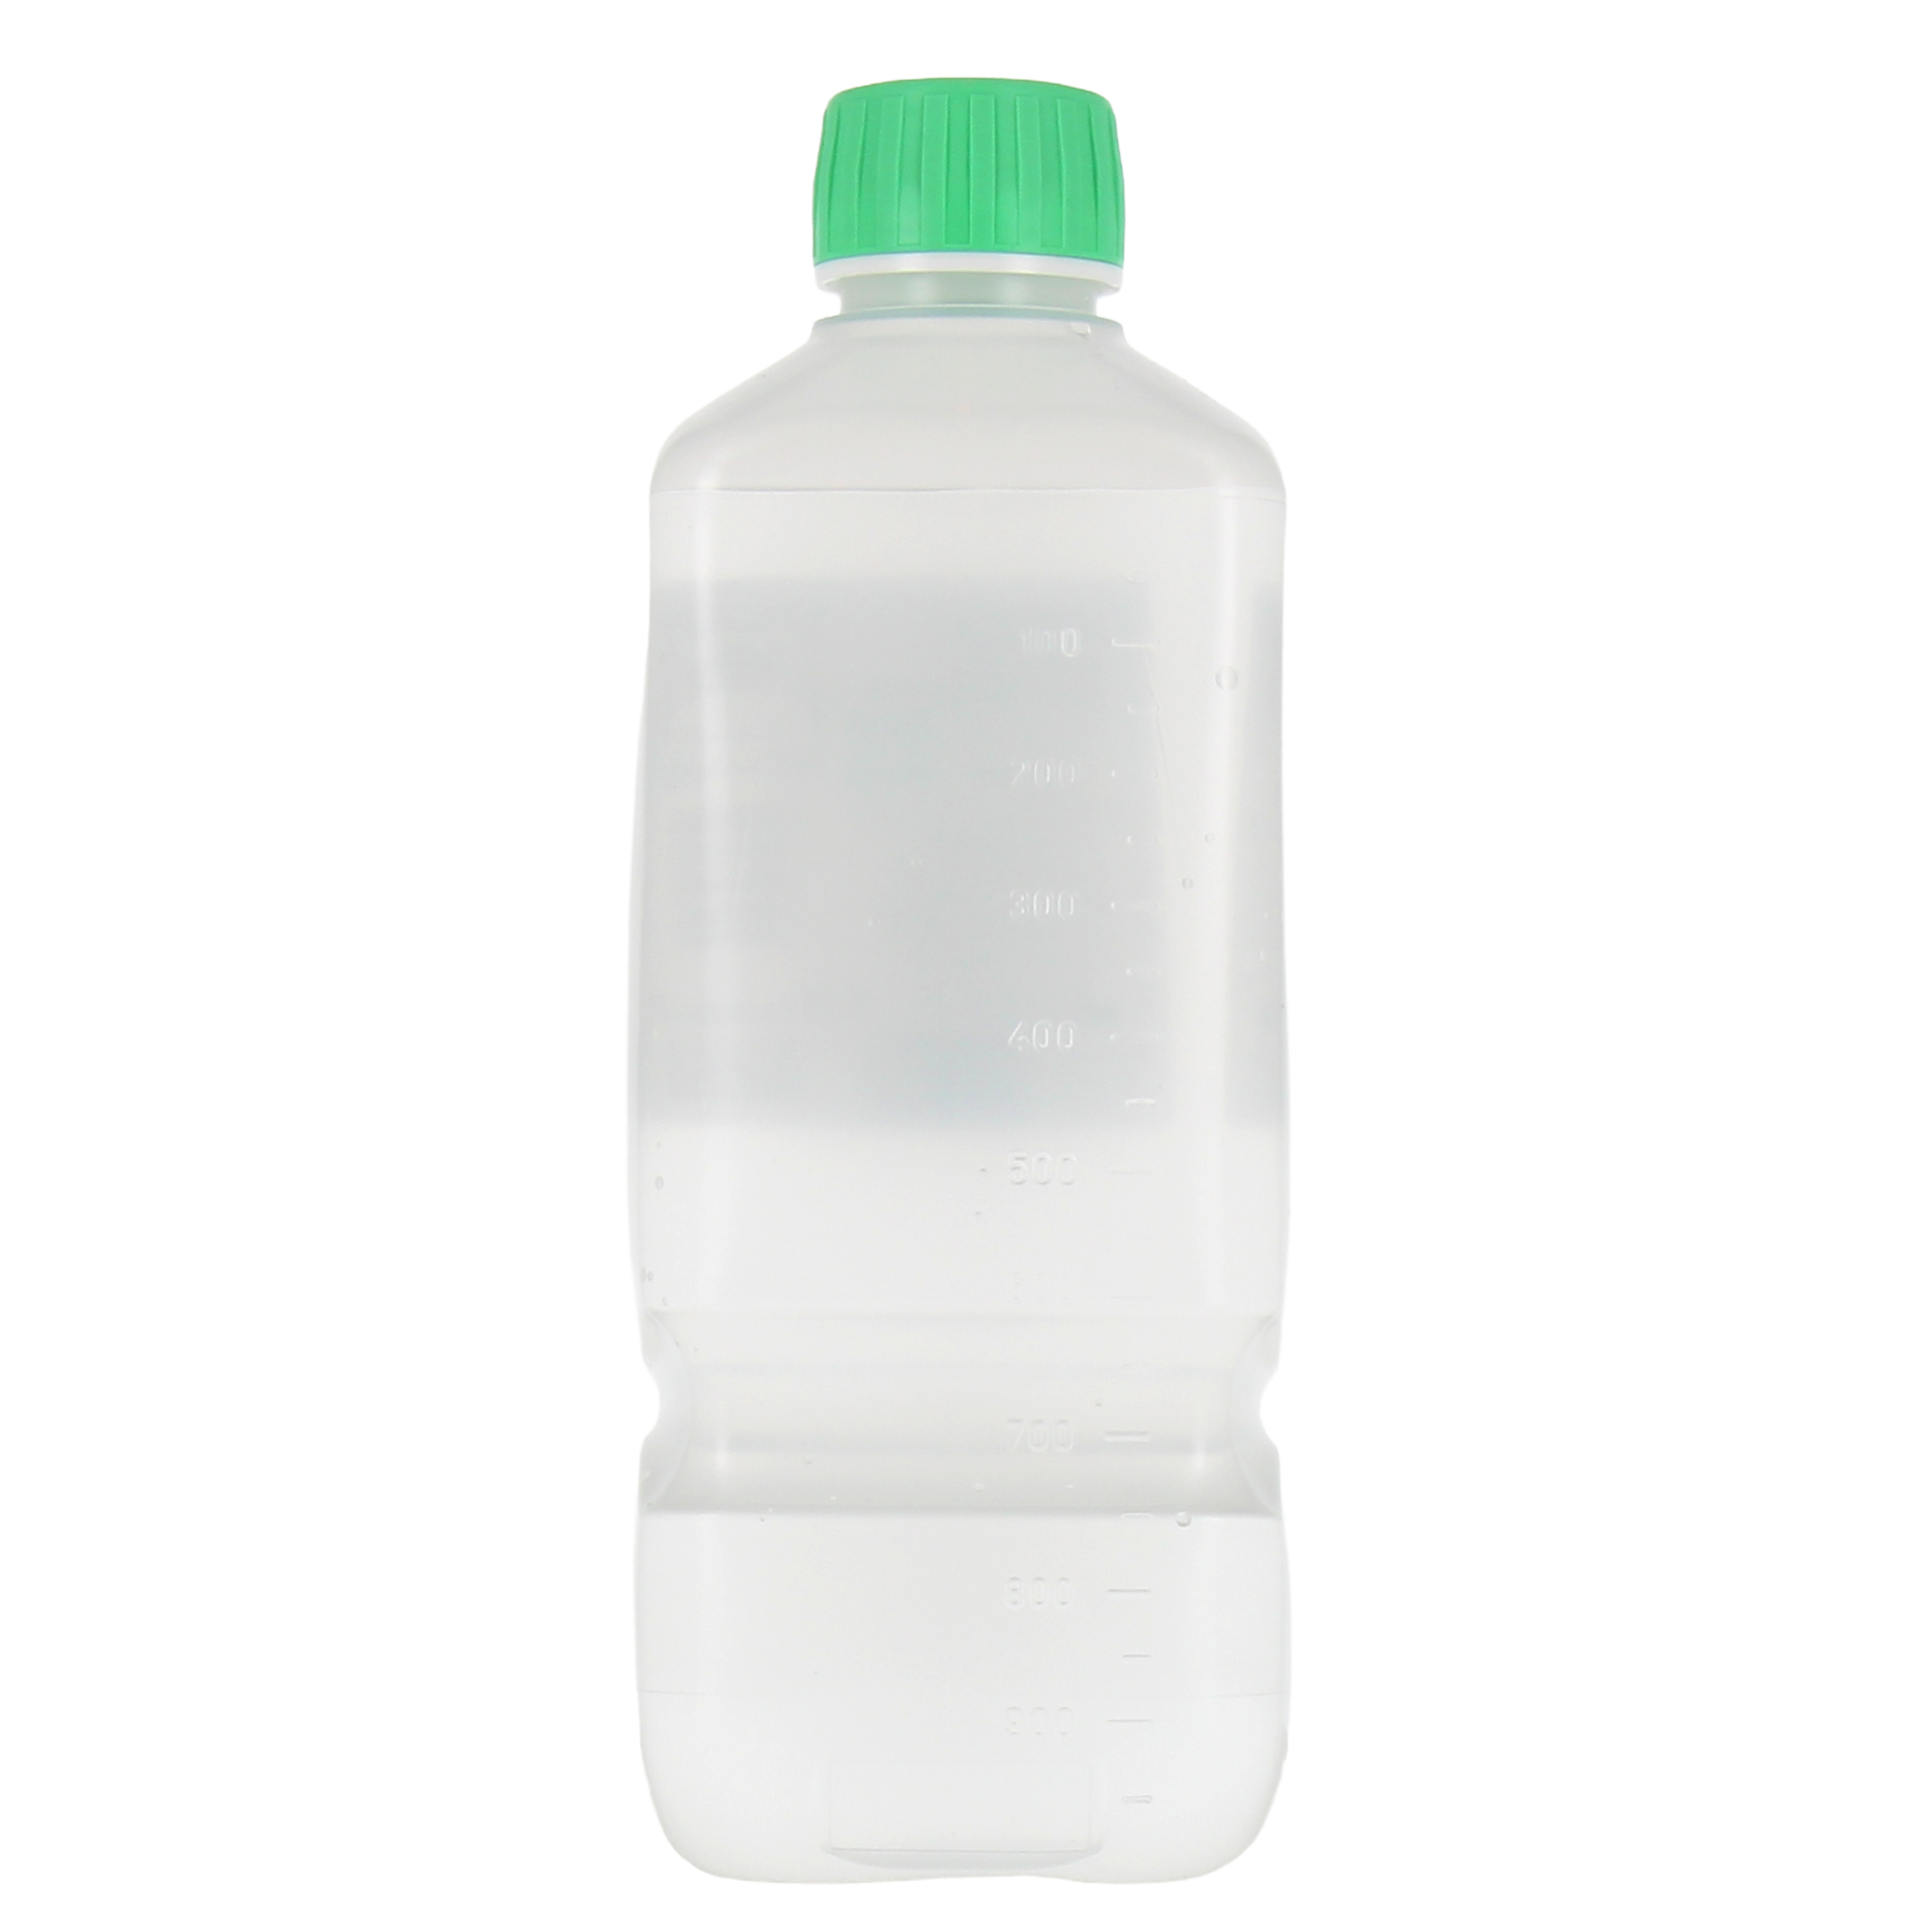 Versol 0.9% Solution pour Irrigation - Sérum physiologique bouteille